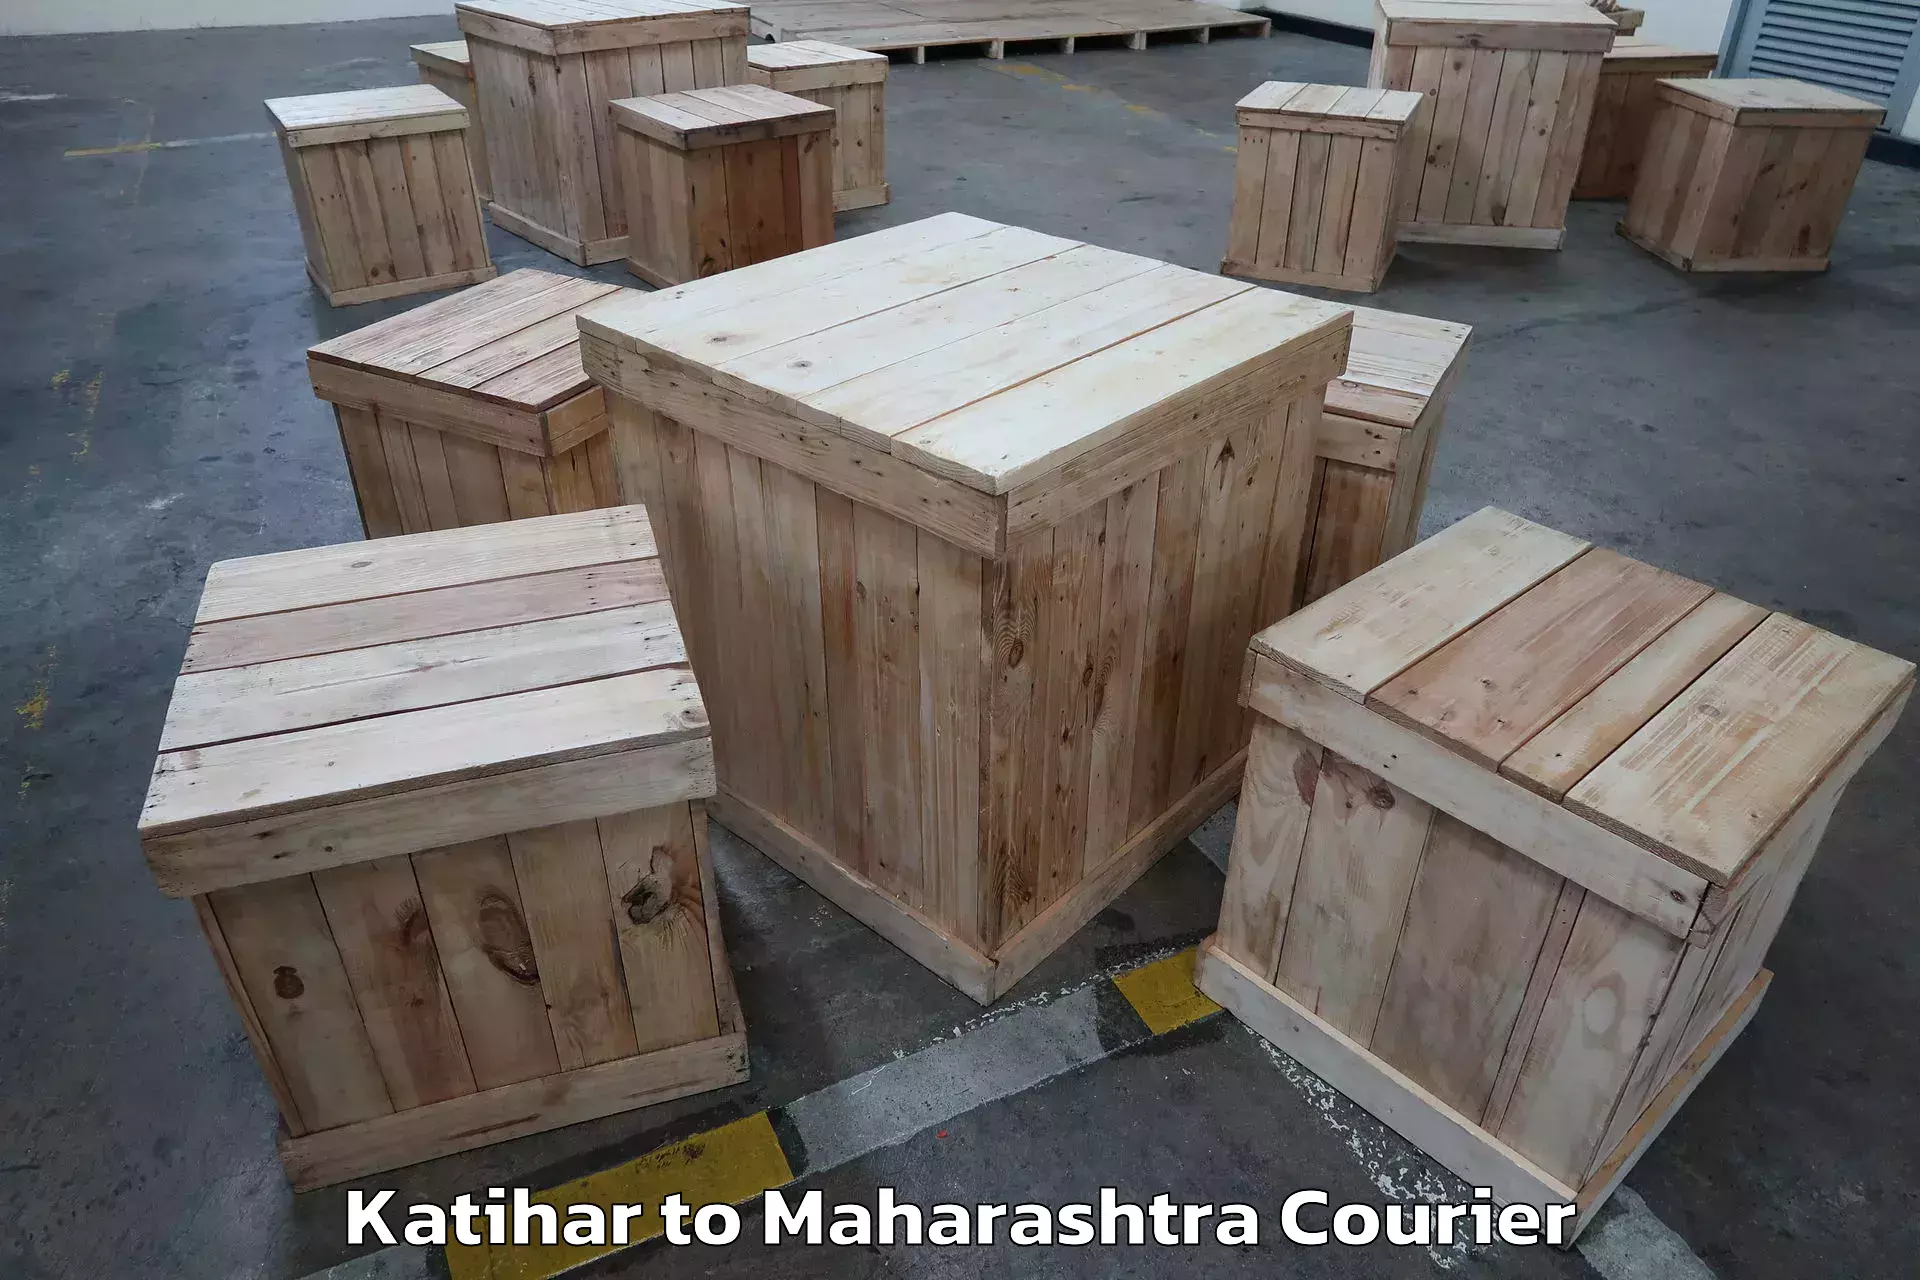 Trusted moving company Katihar to Maharashtra